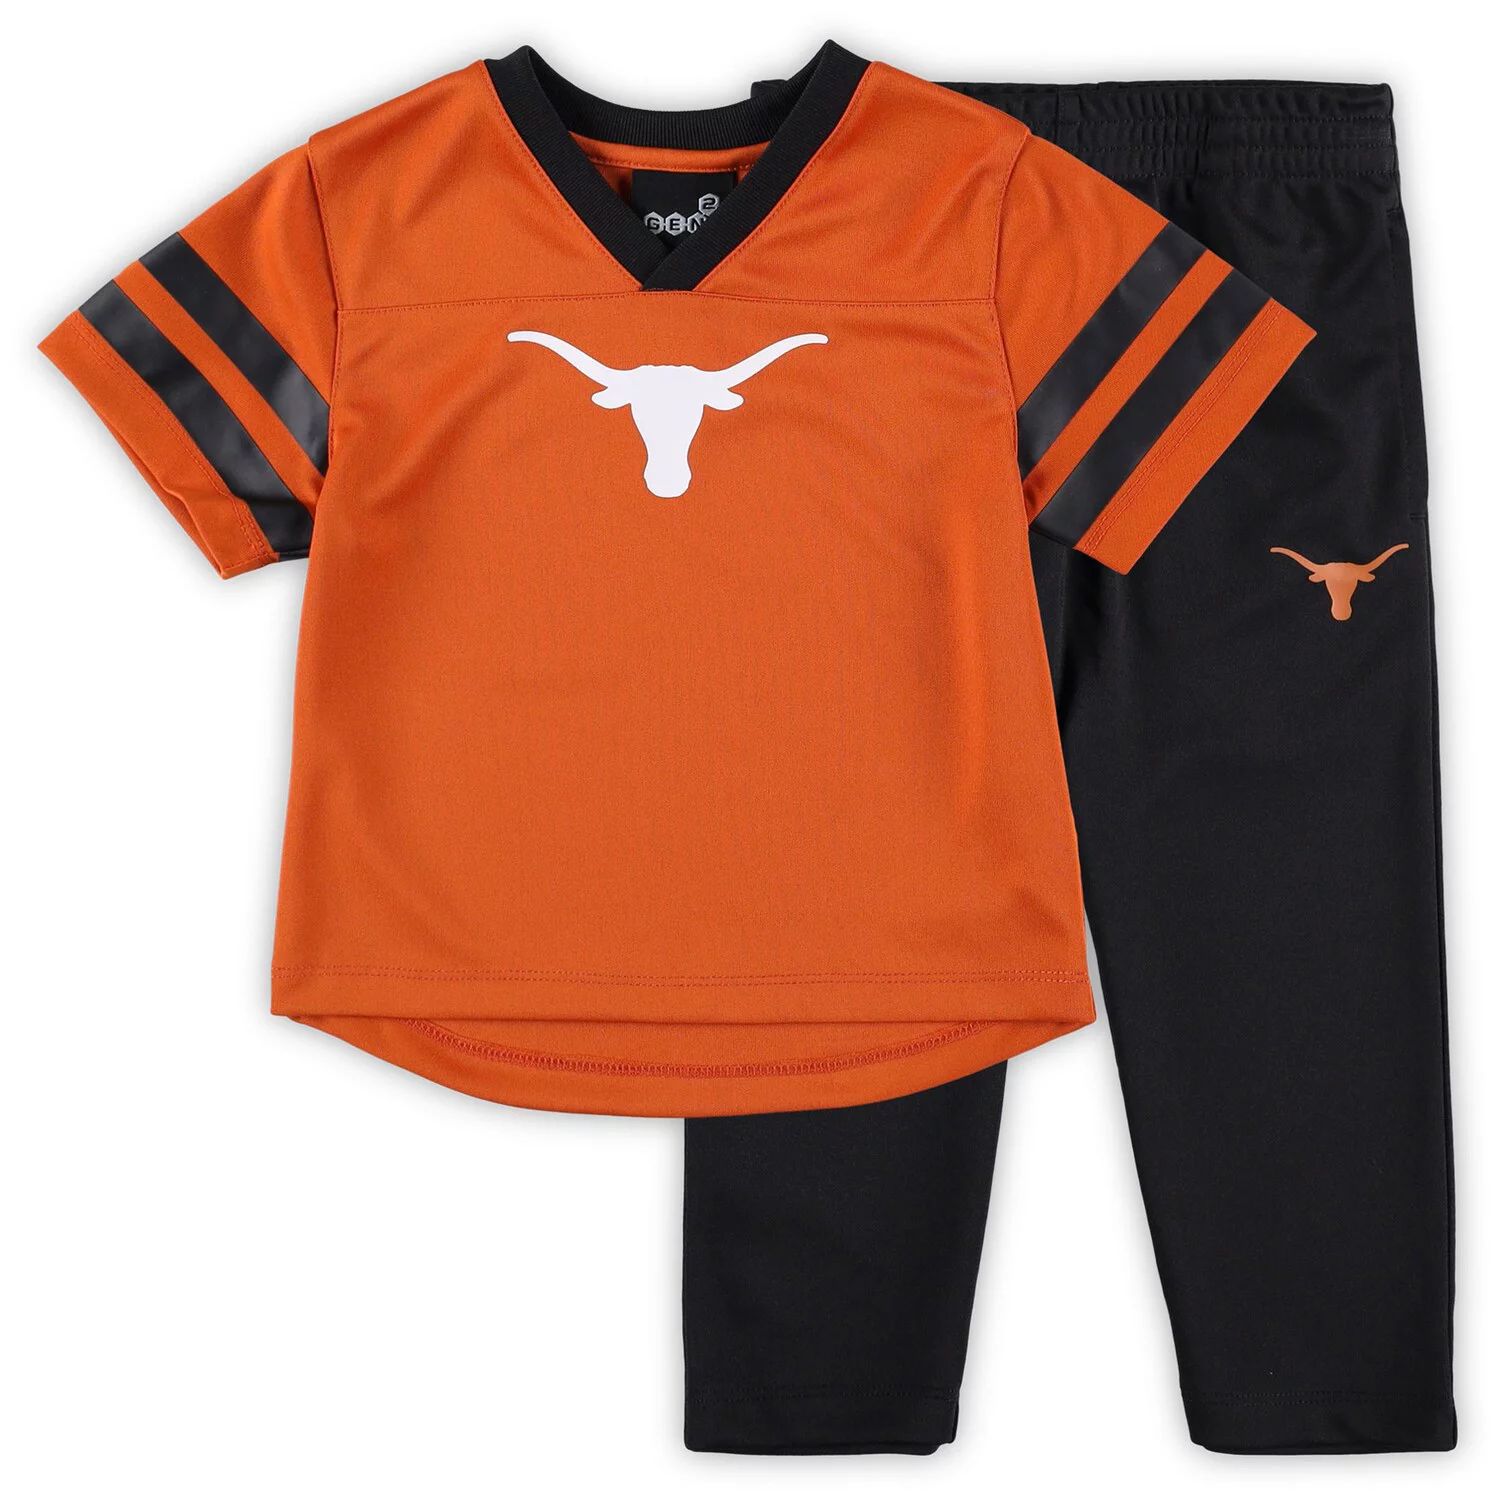 Комплект из джерси и брюк Texas Longhorns Red Zone для малышей оранжевого/черного цвета Outerstuff